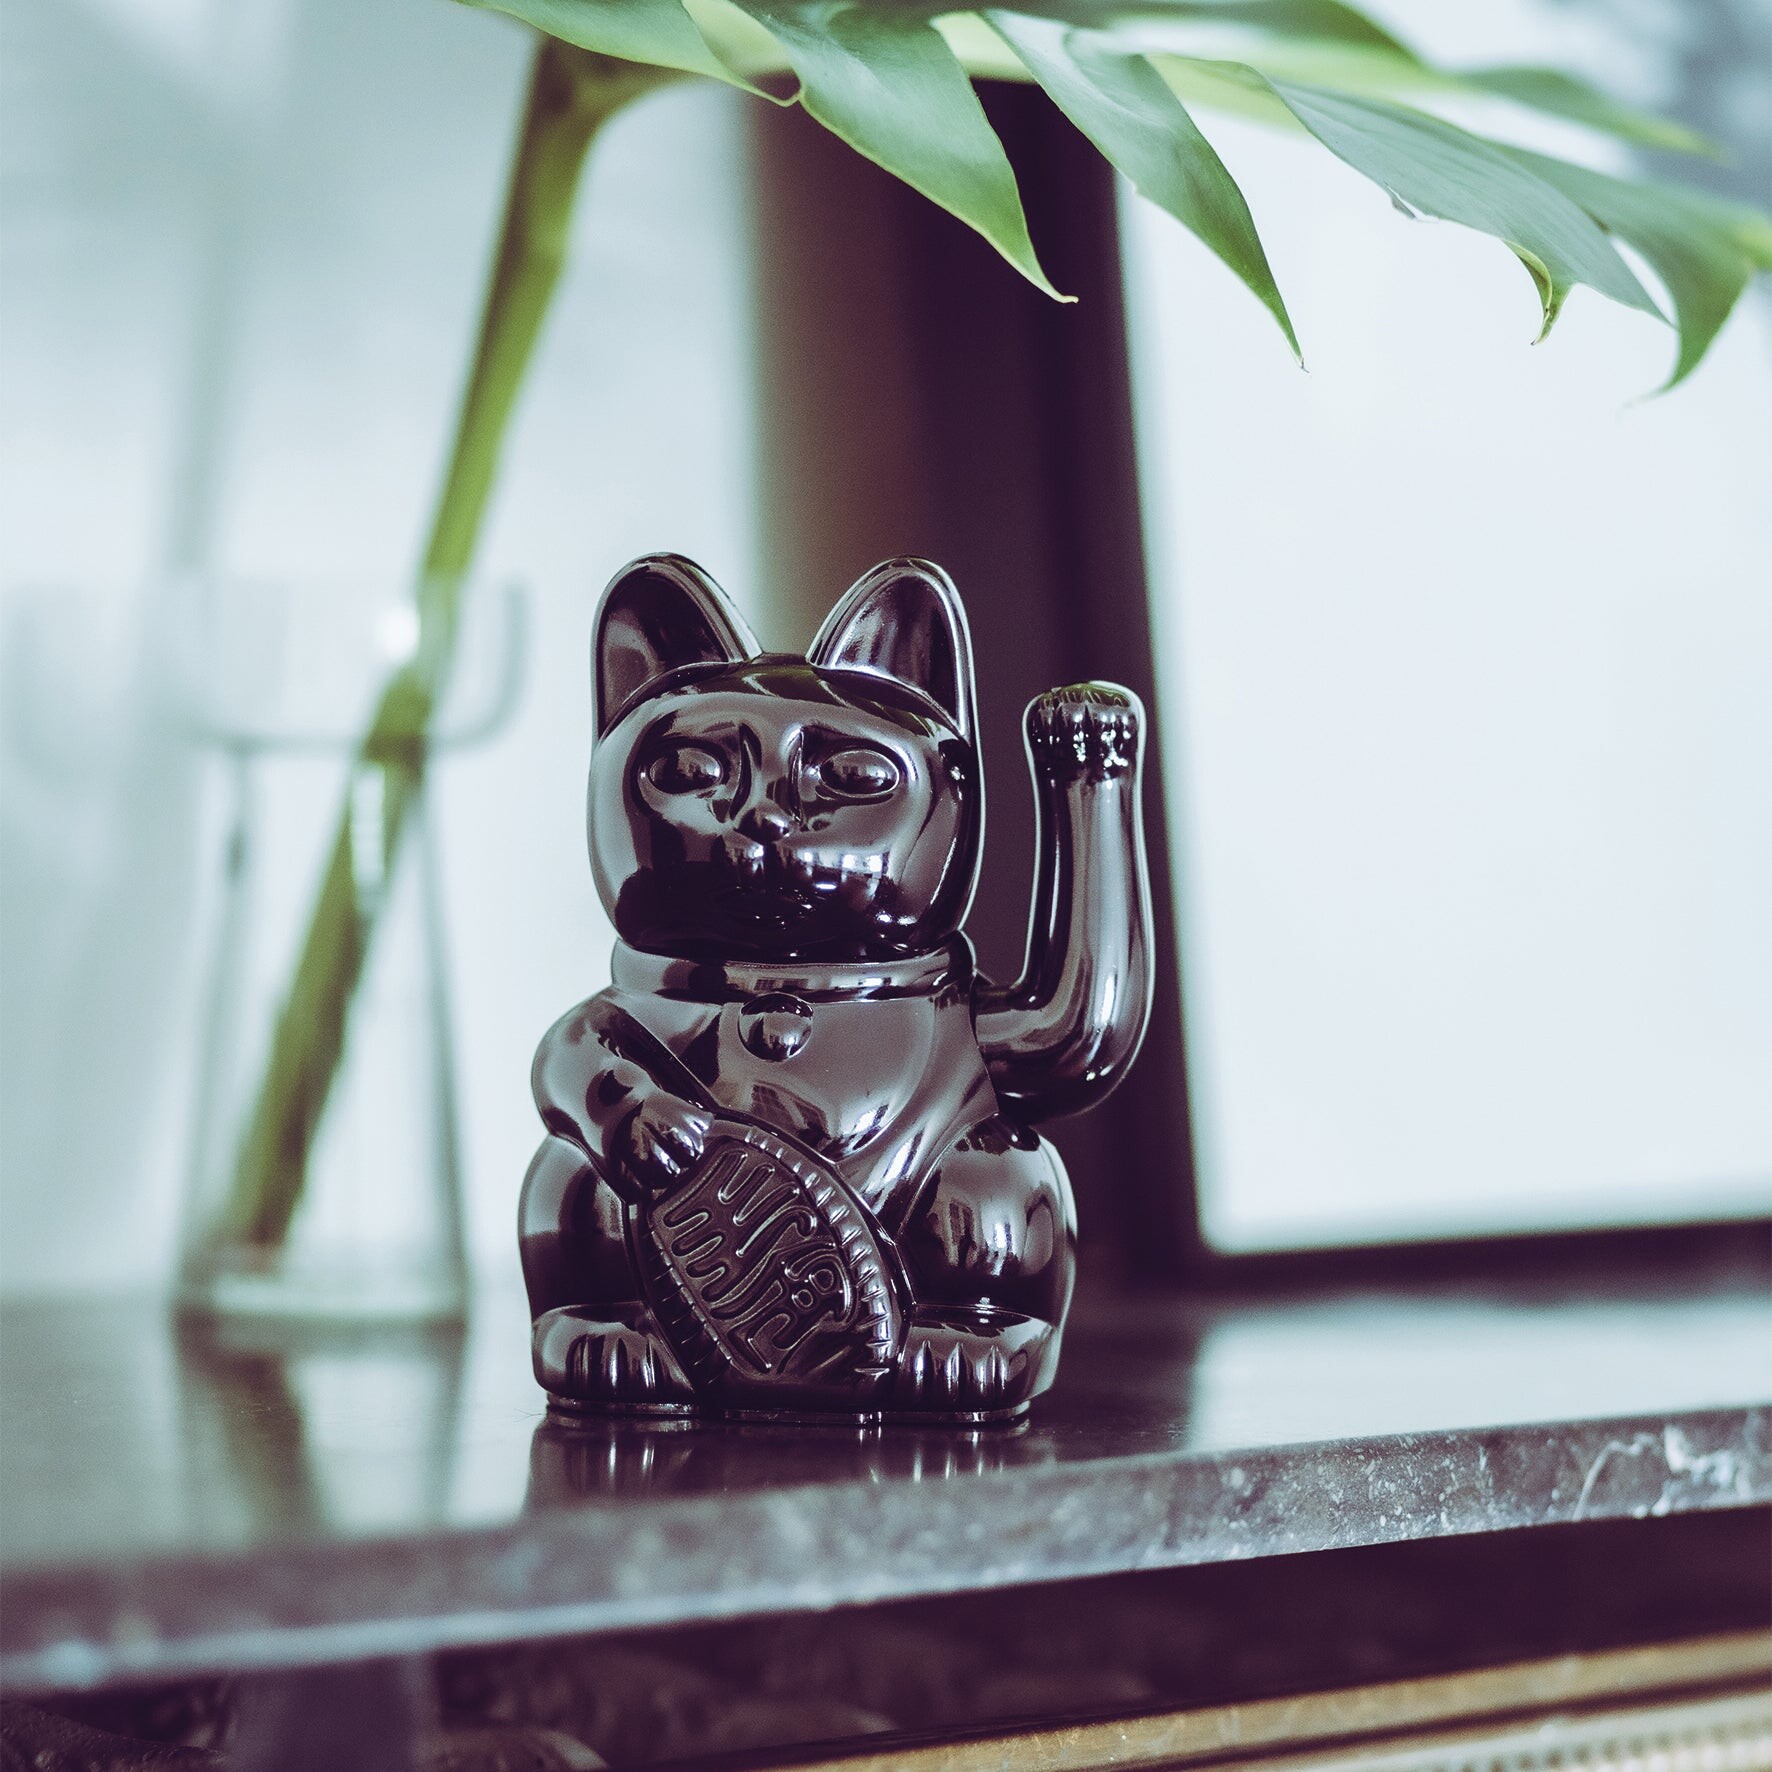 Maneki-Neko : L'histoire fascinante du chat porte-bonheur japonais